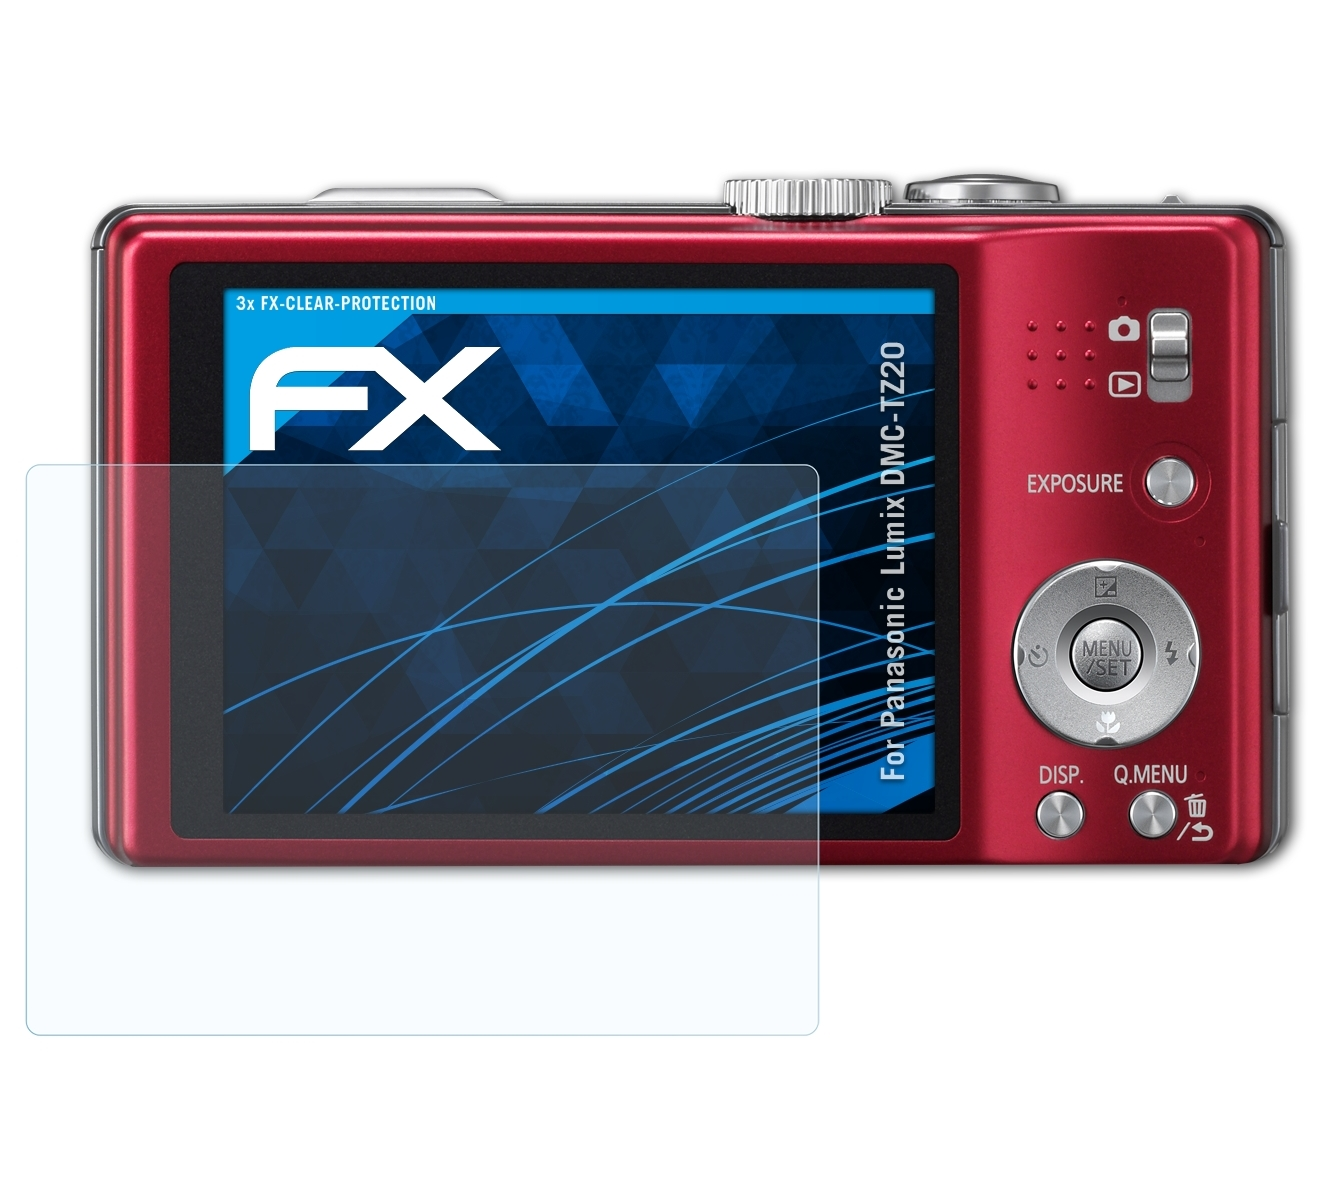 3x ATFOLIX Displayschutz(für FX-Clear Lumix DMC-TZ20) Panasonic